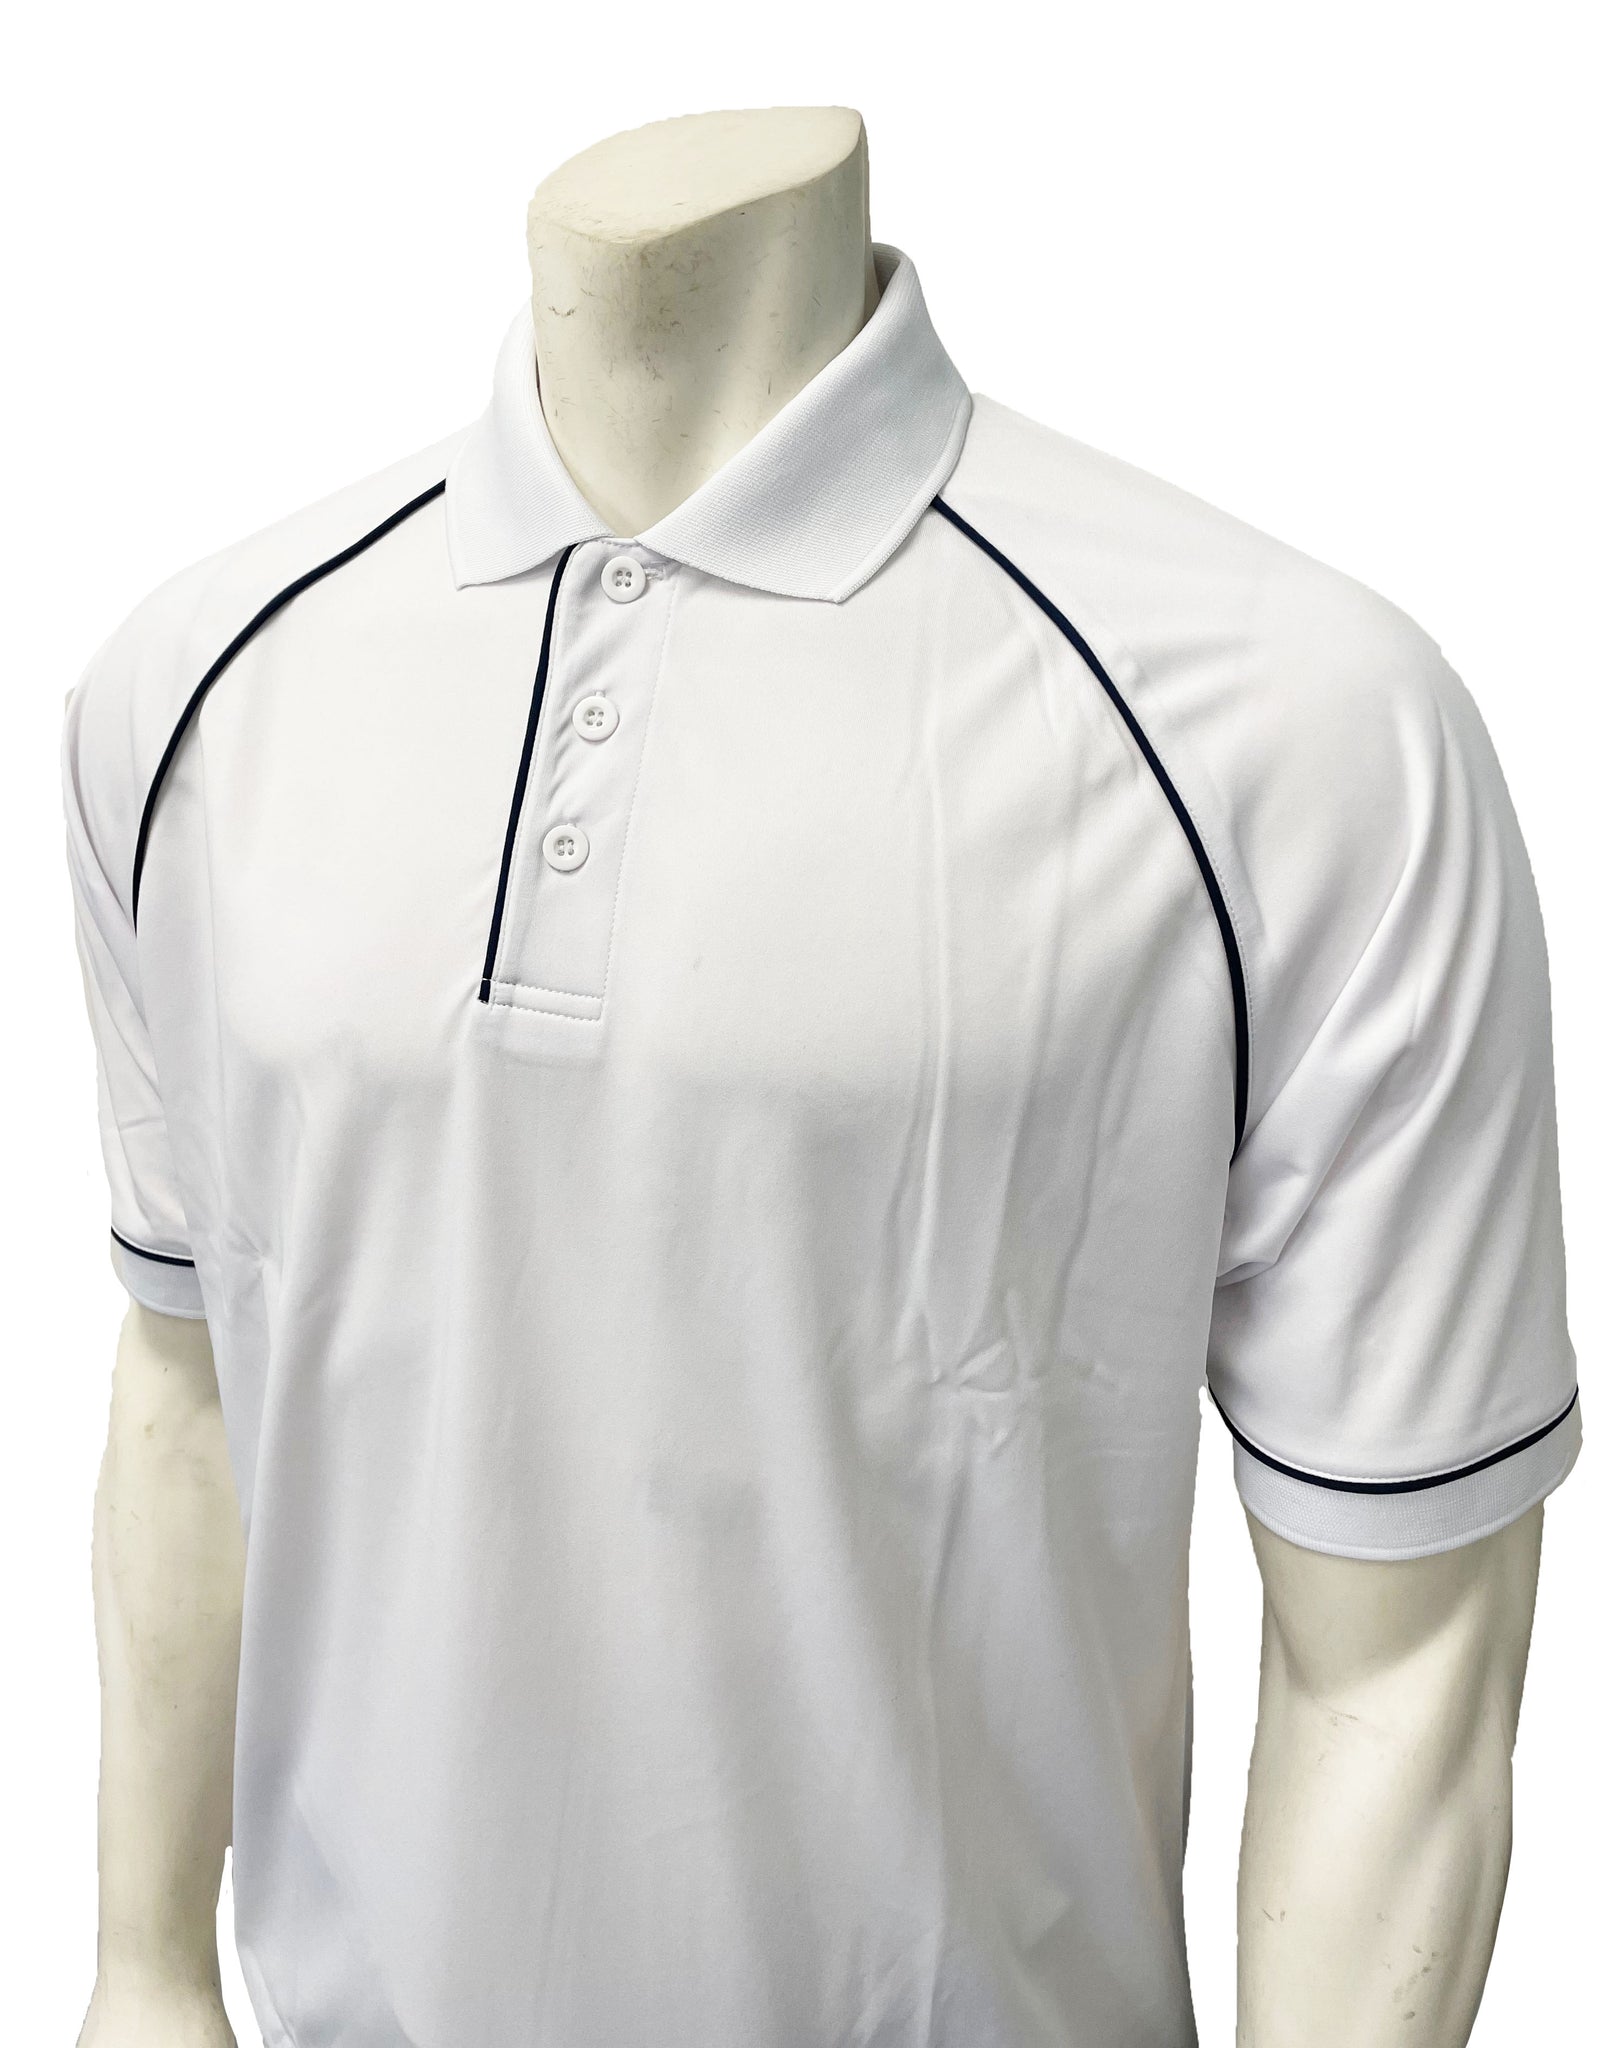 VBS-400WHT - White Mesh Shirt No Pocket